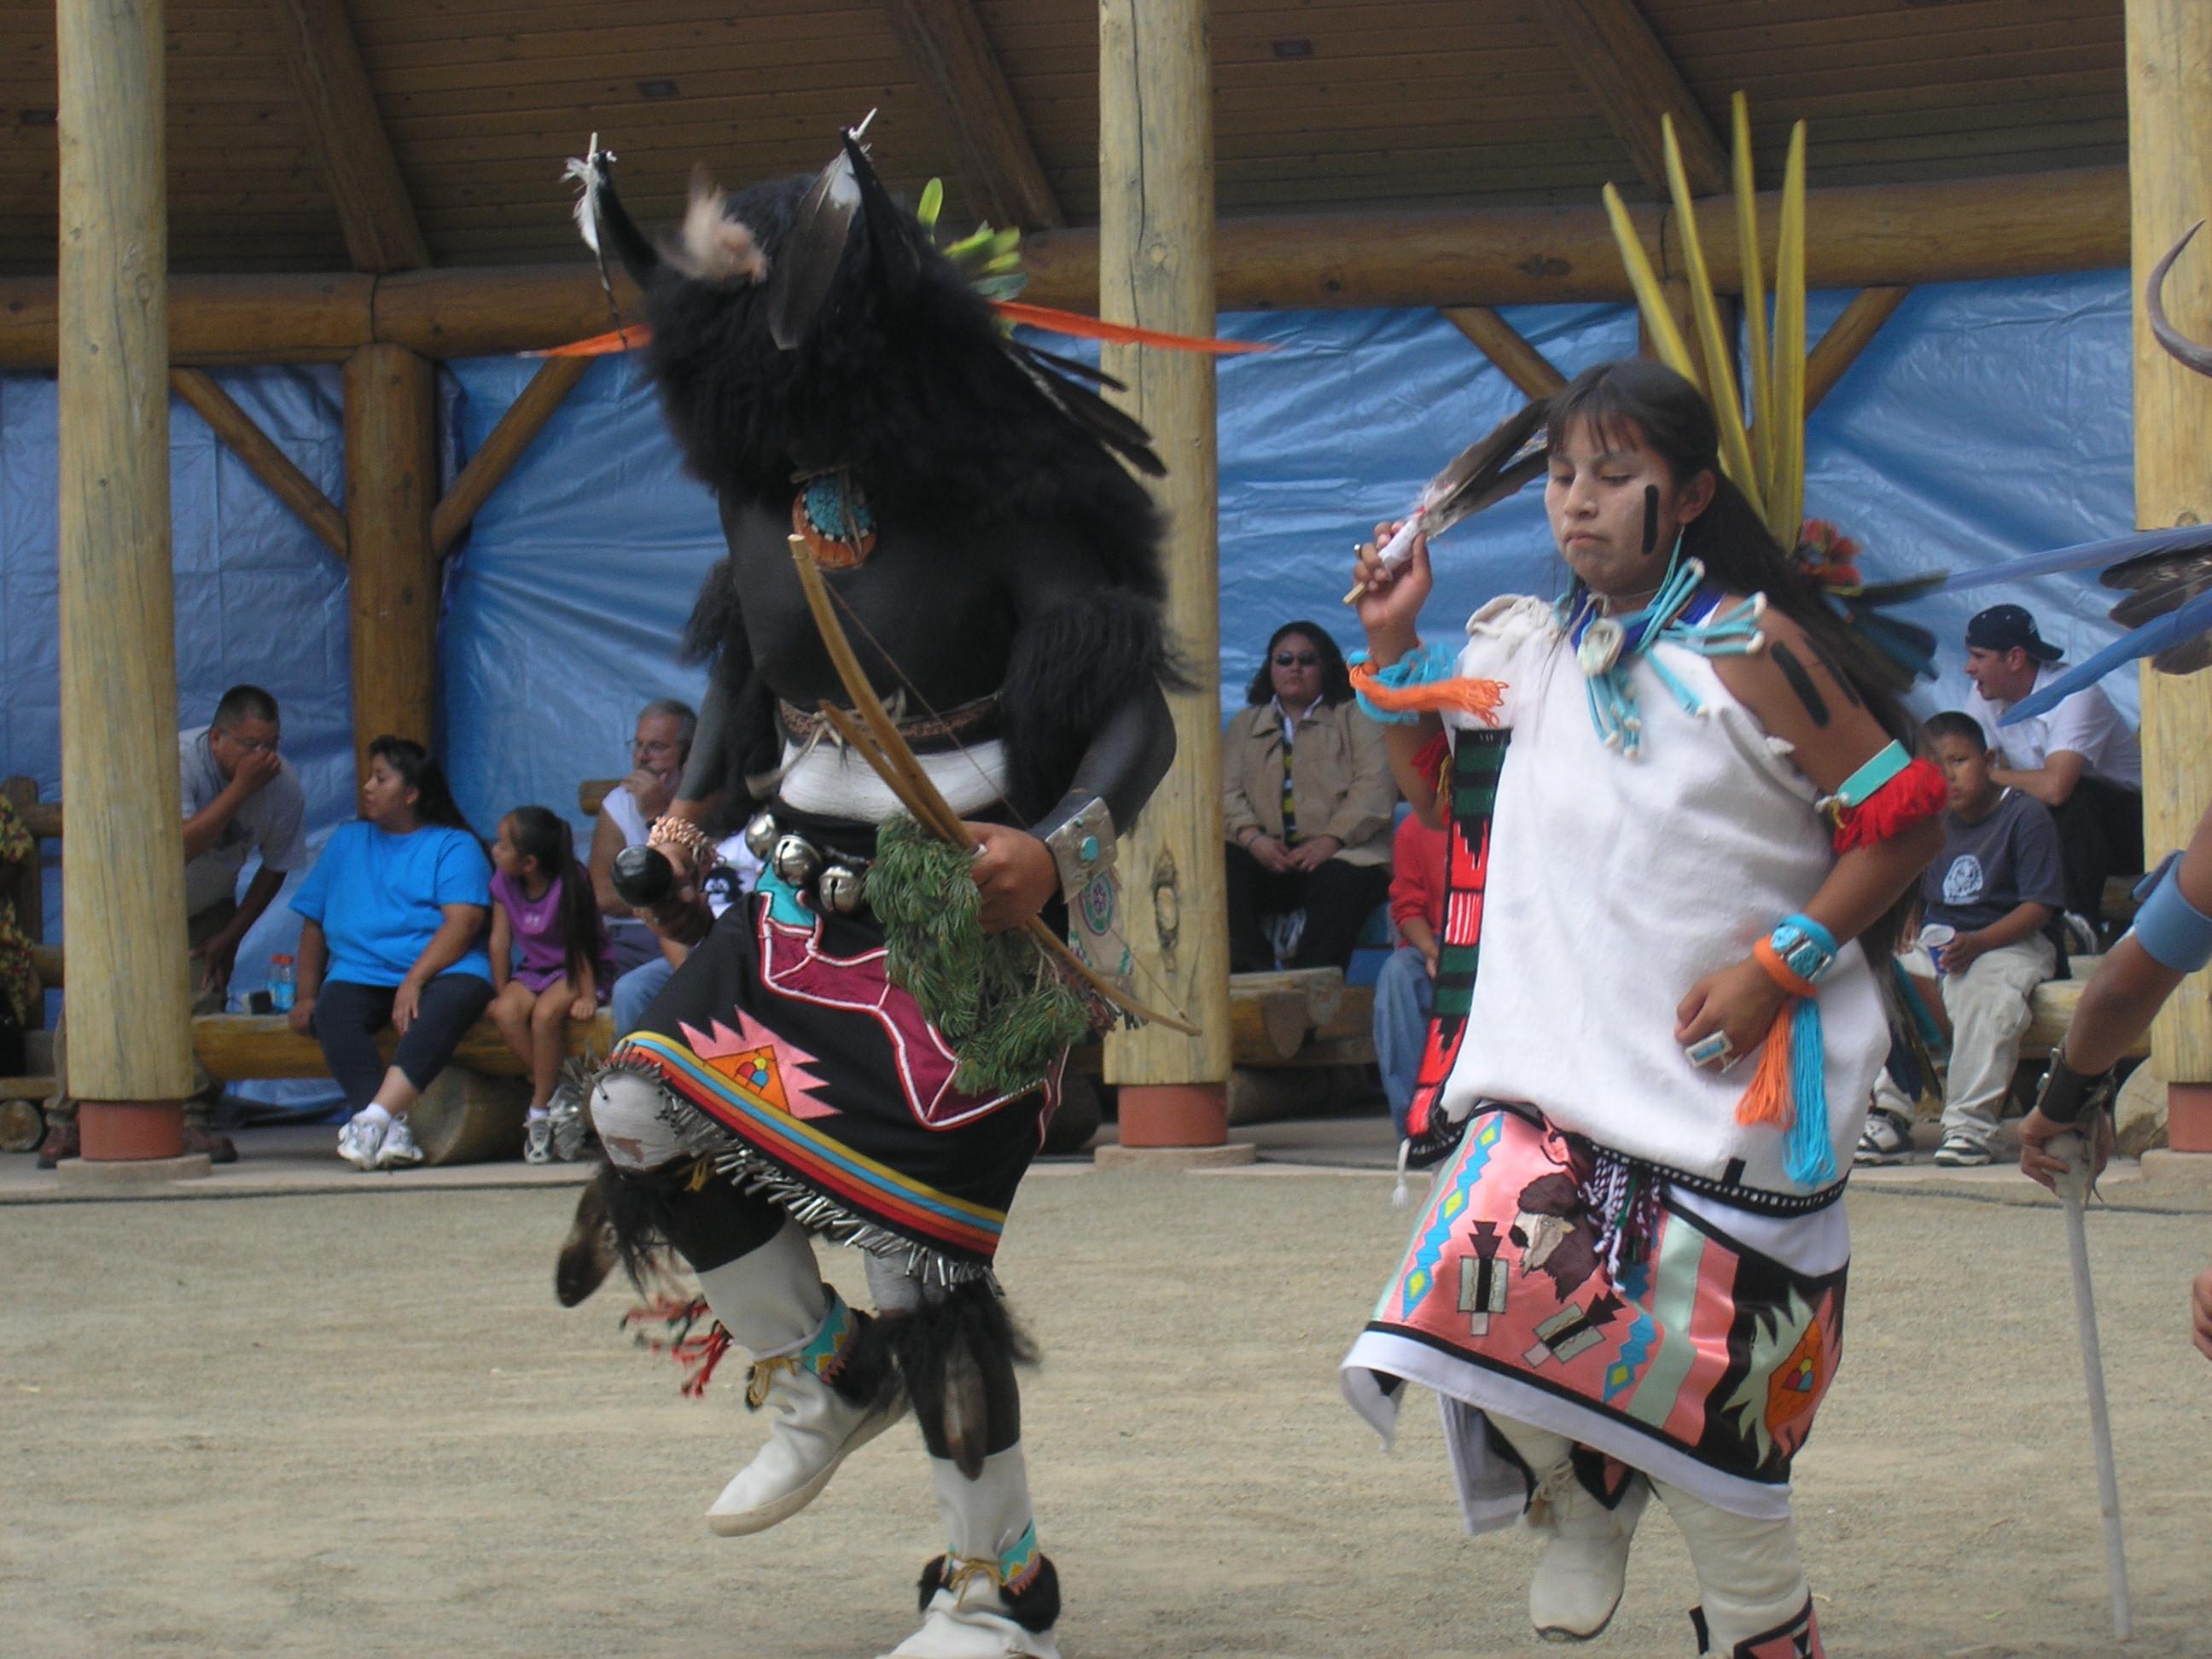 Taniec Bizona wykonywany przez współczesnych Indian Pueblo. Zwyczaje i obrzędy religijne w dalszym ciągu wyznaczają rytm życia Indian Pueblo, w dużej części nawet tych mieszkających w miastach, wracających kilka/kilkanaście razy w roku do rezerwatów na różne ceremonie